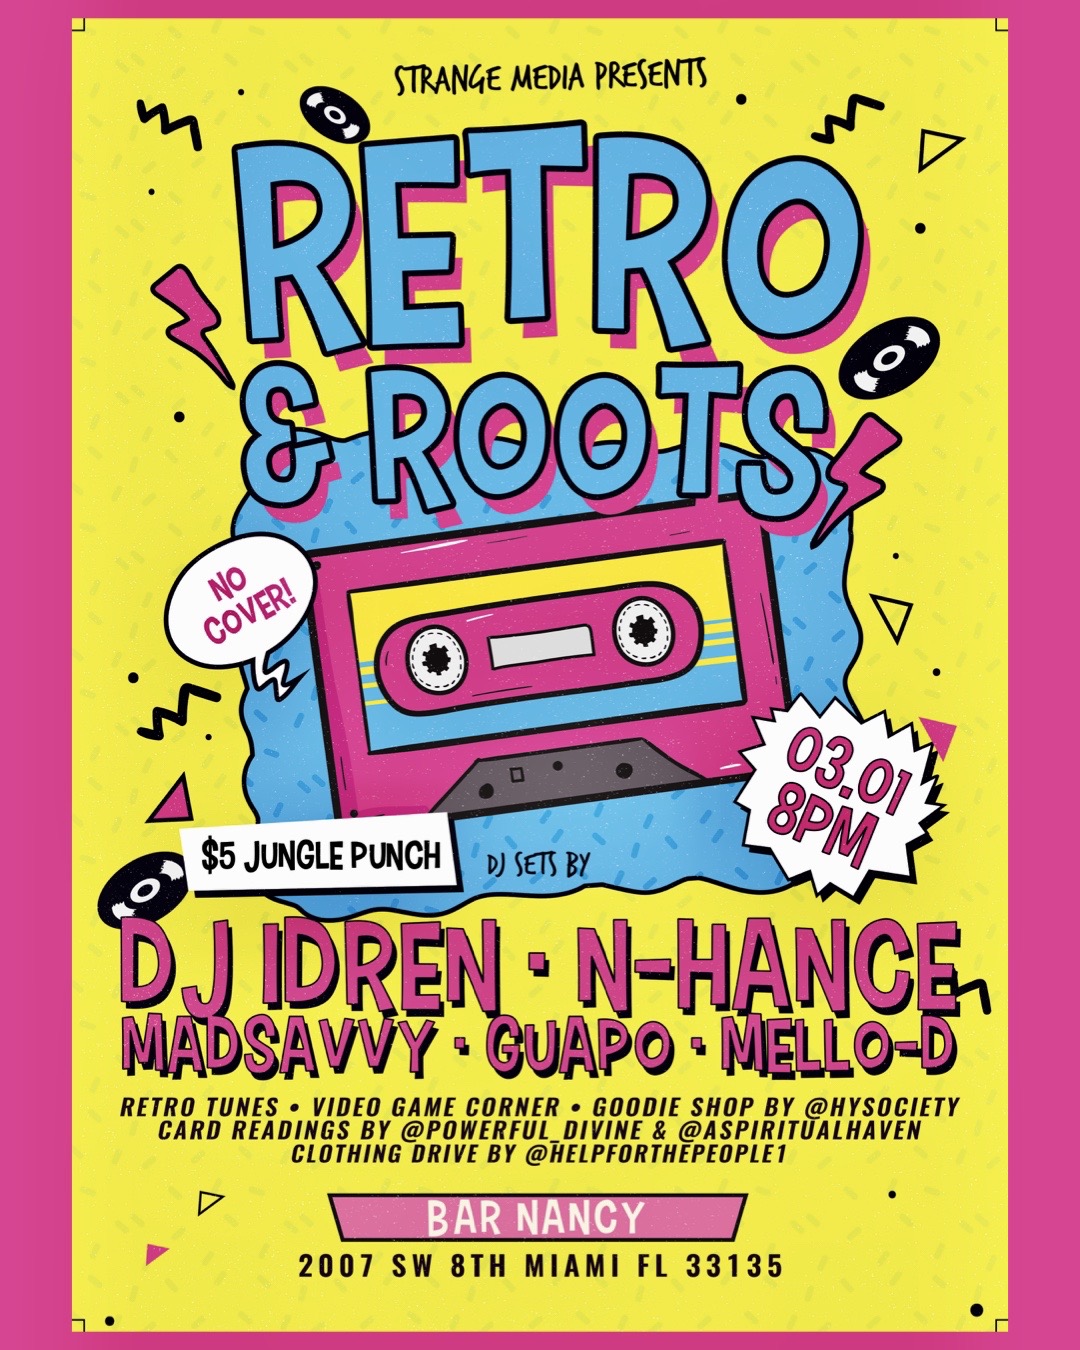 Retro And Roots! at Bar Nanc